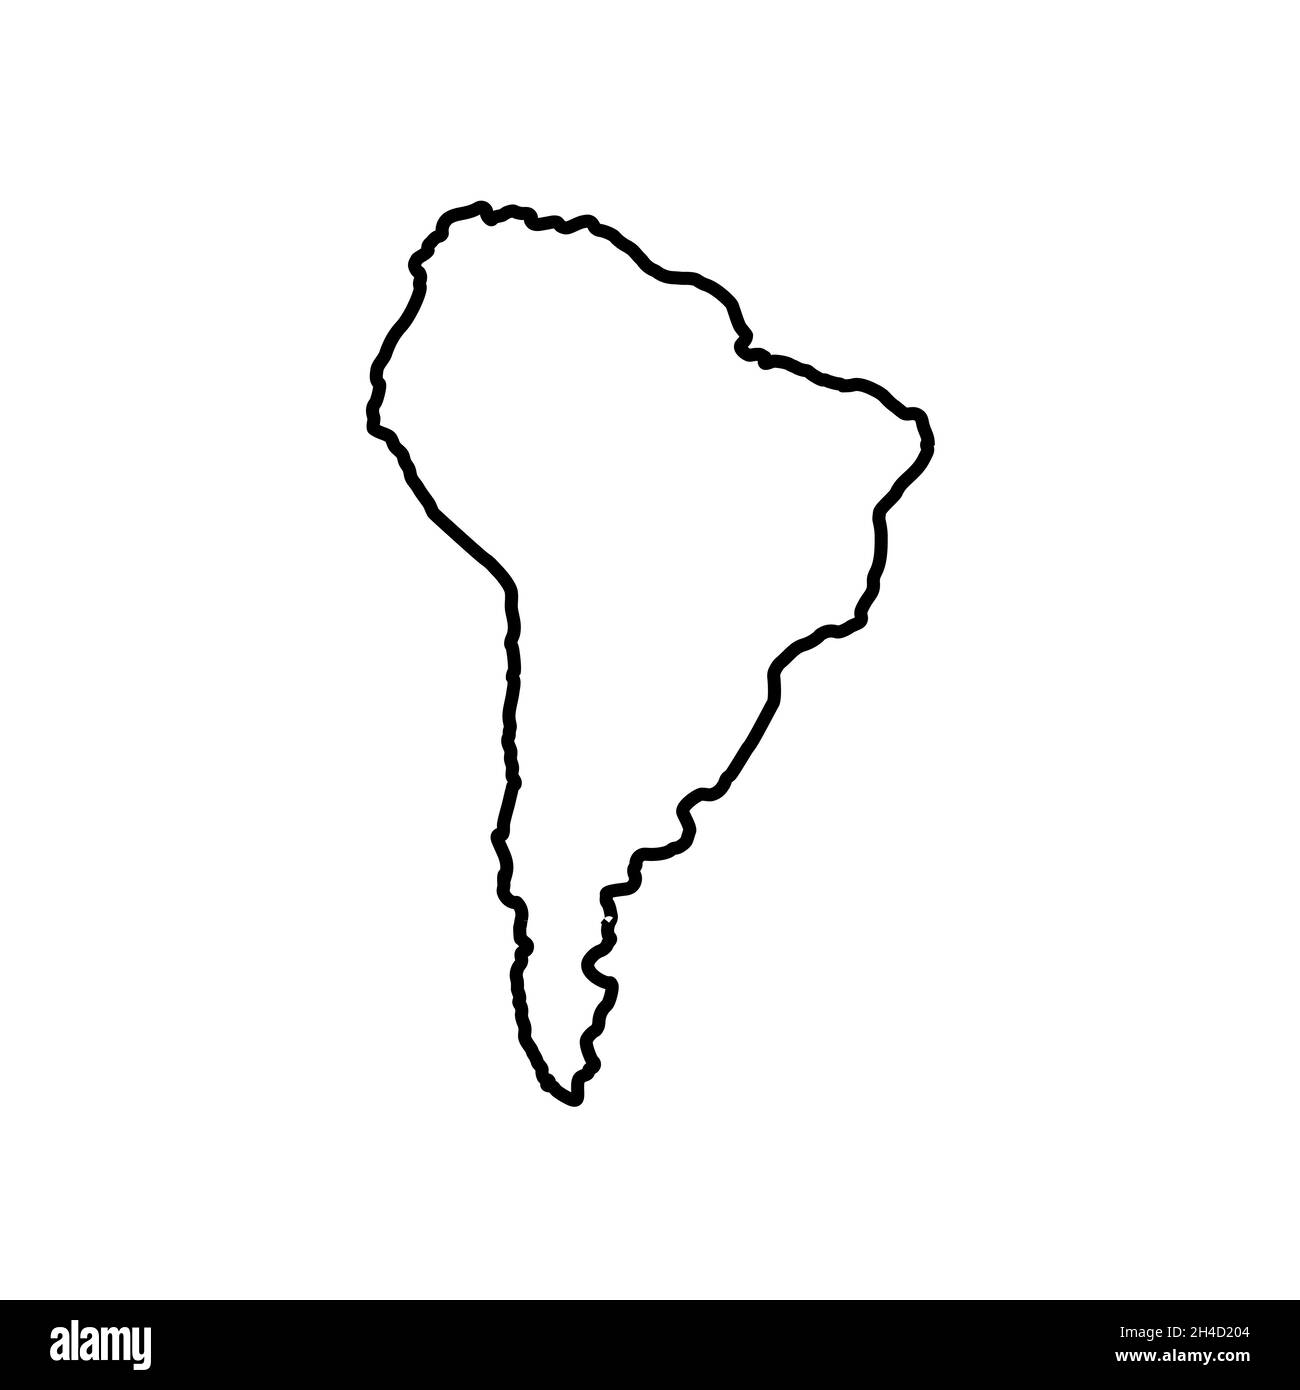 Stile della linea dell'icona della mappa del Sud America Illustrazione Vettoriale